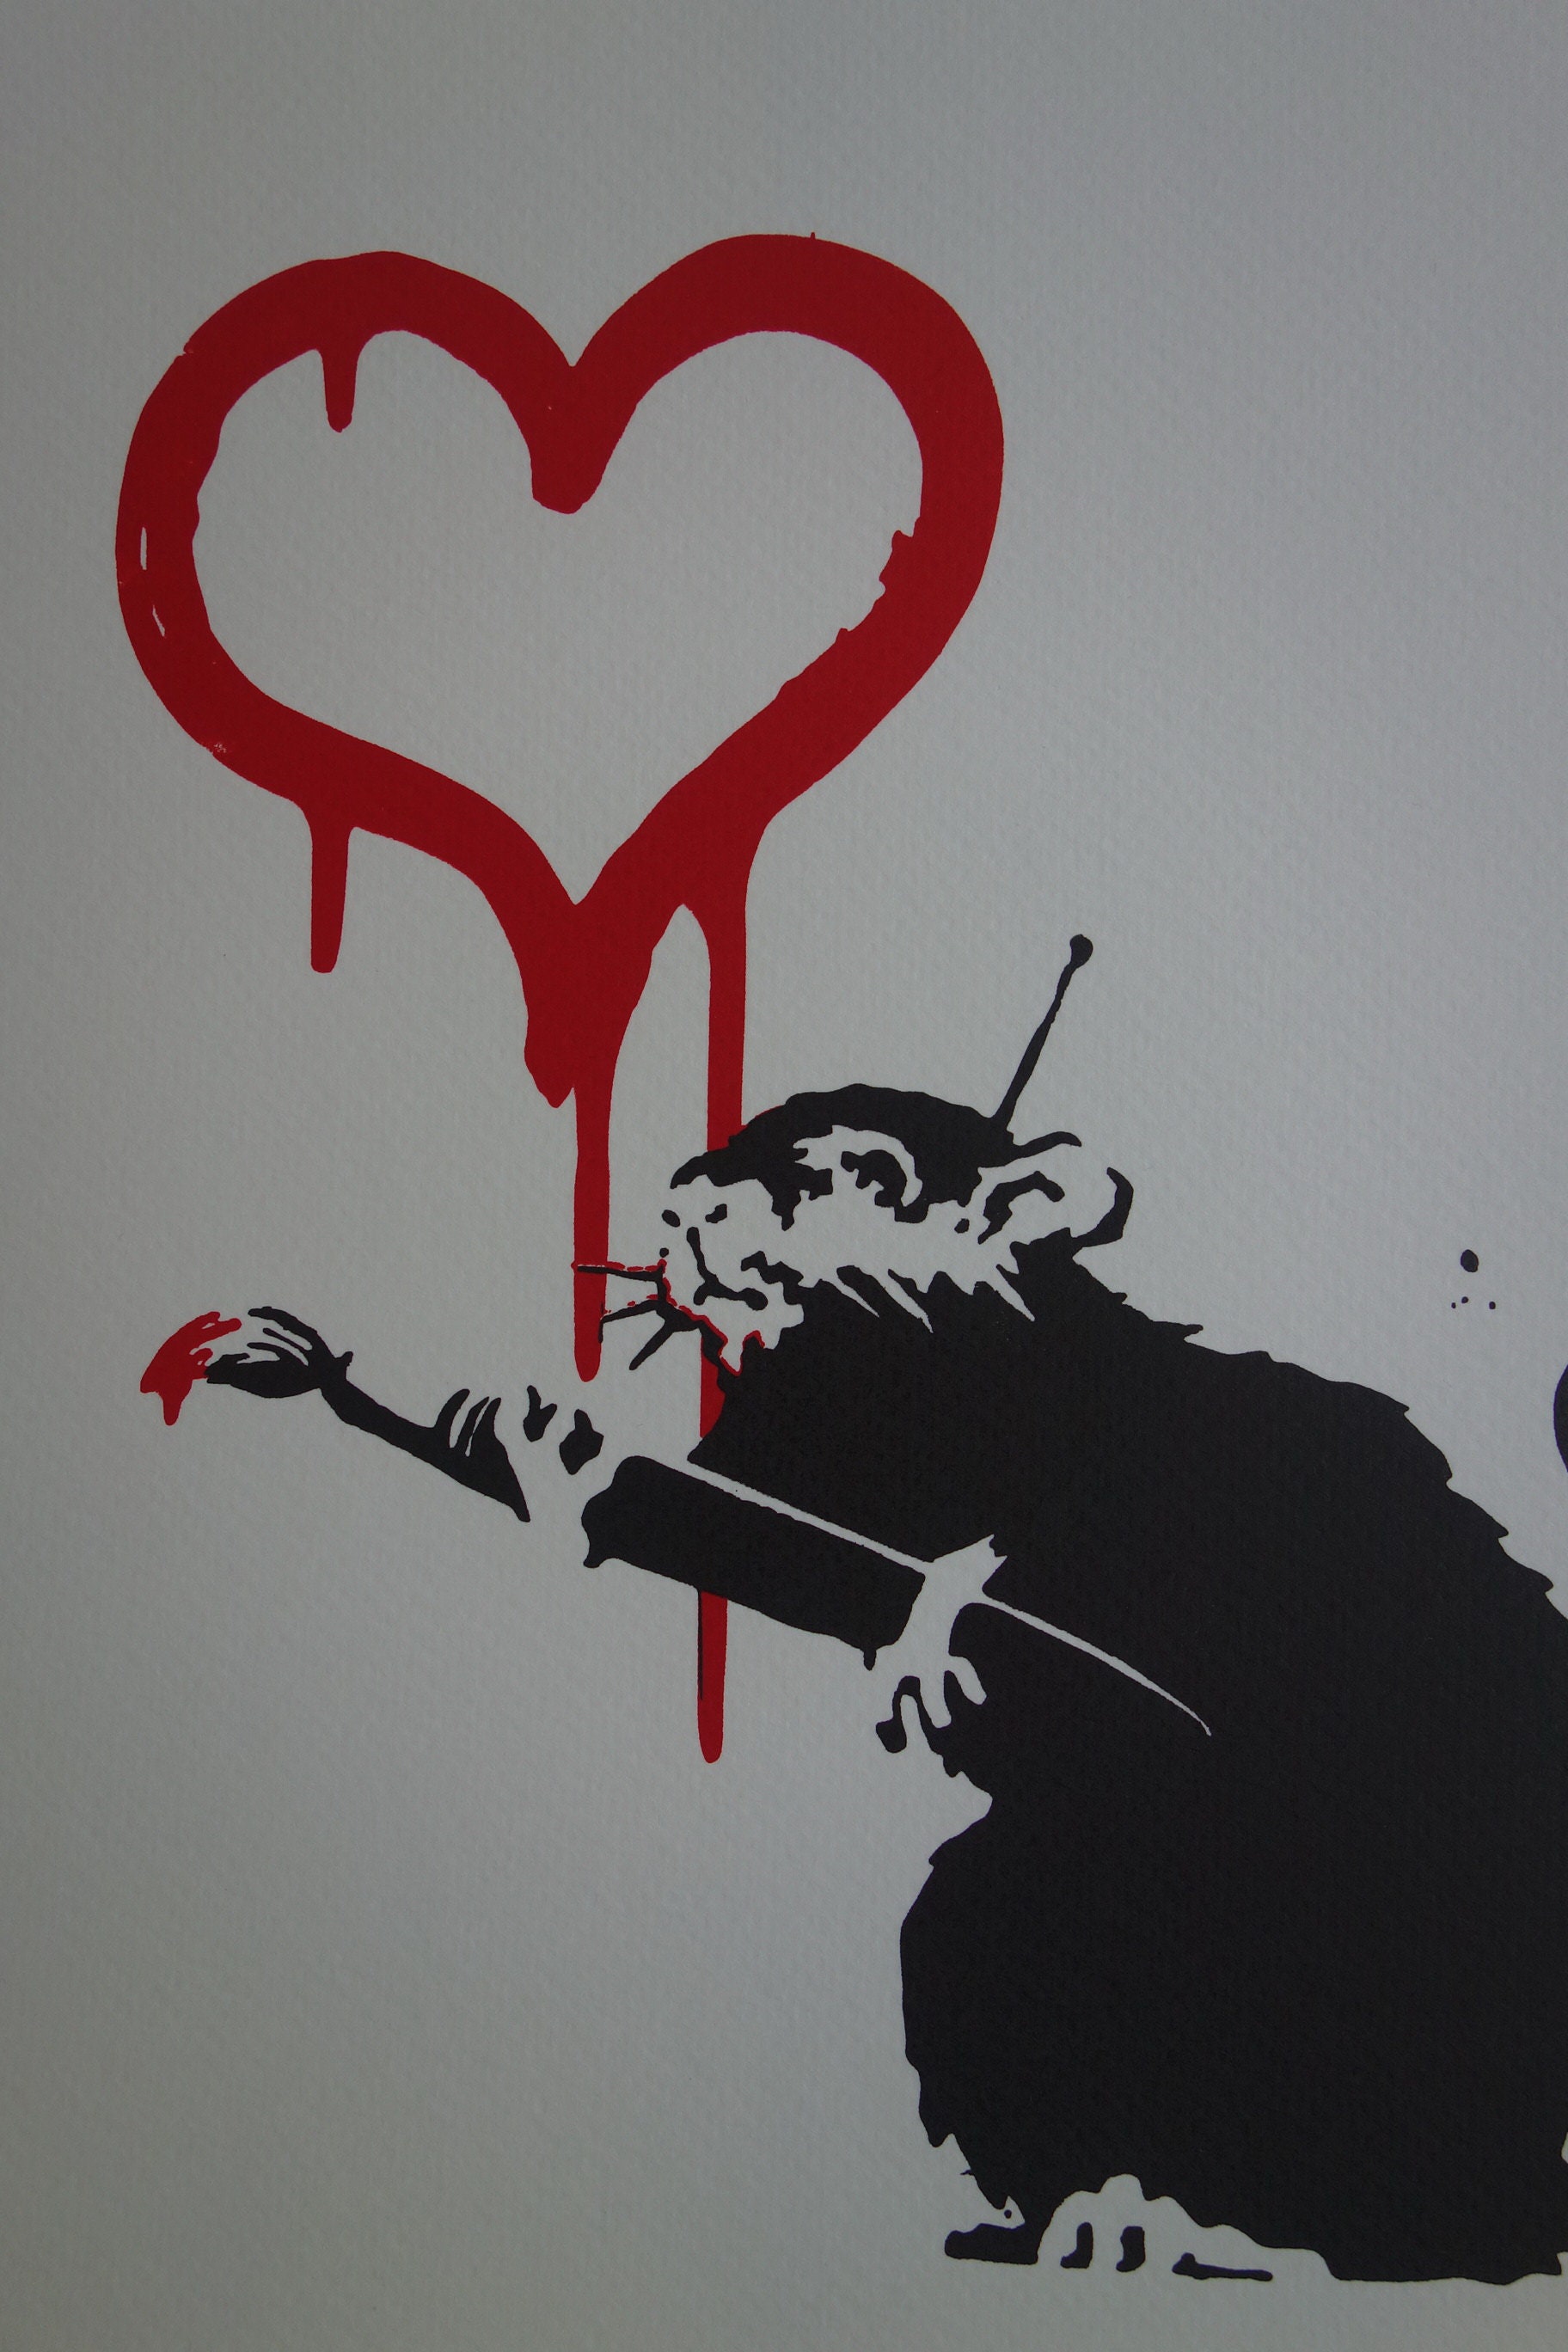 Öffne Deinen Schirm und es regnet Herzen Banksy' Sticker